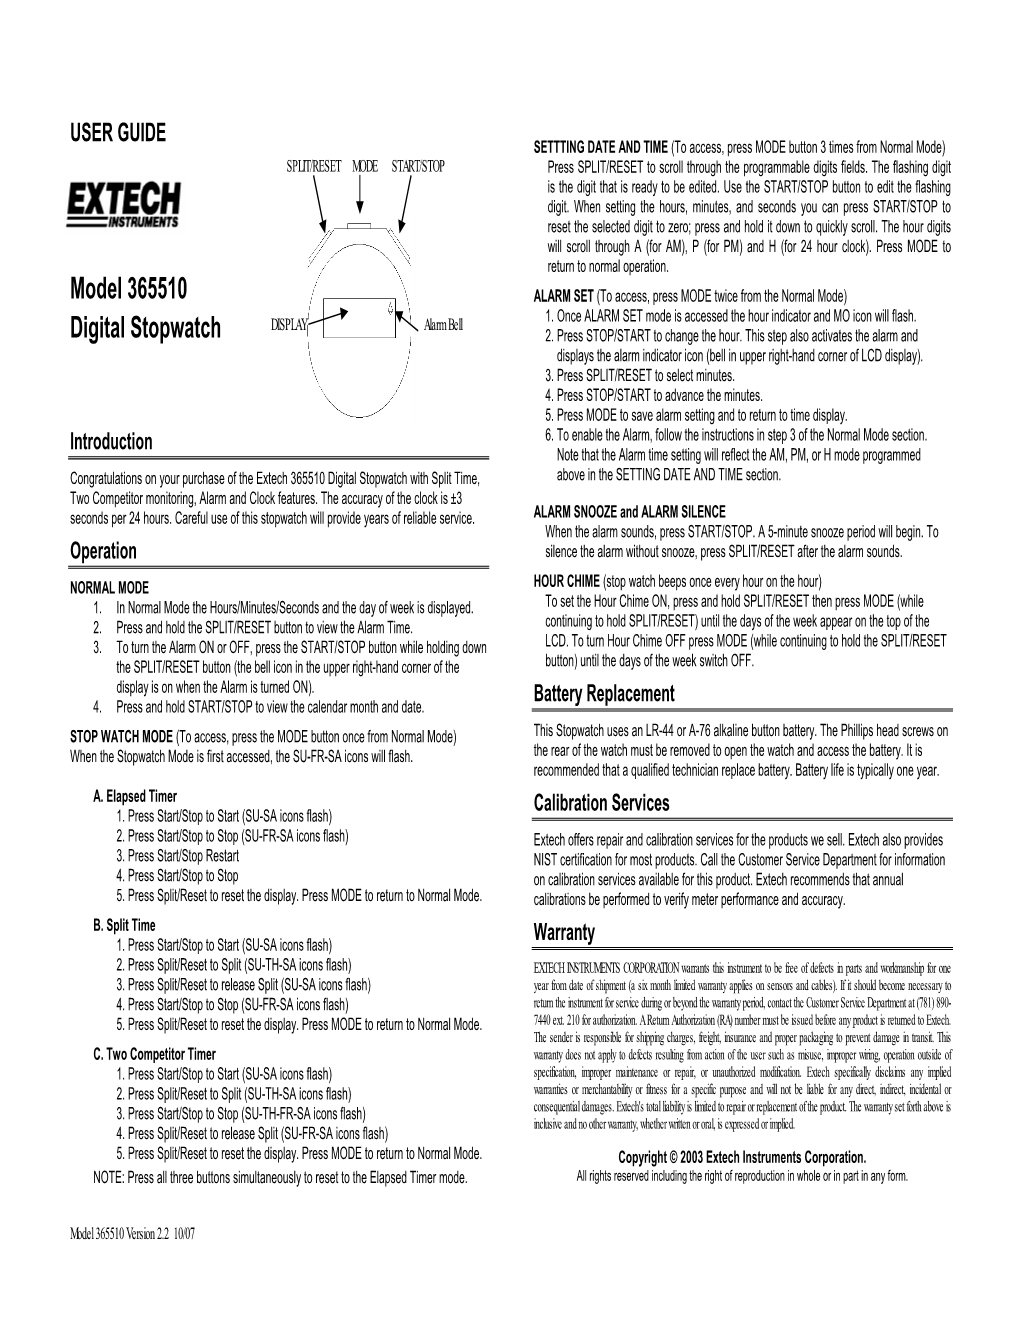 92637 Digital Stopwatch Clock Manual